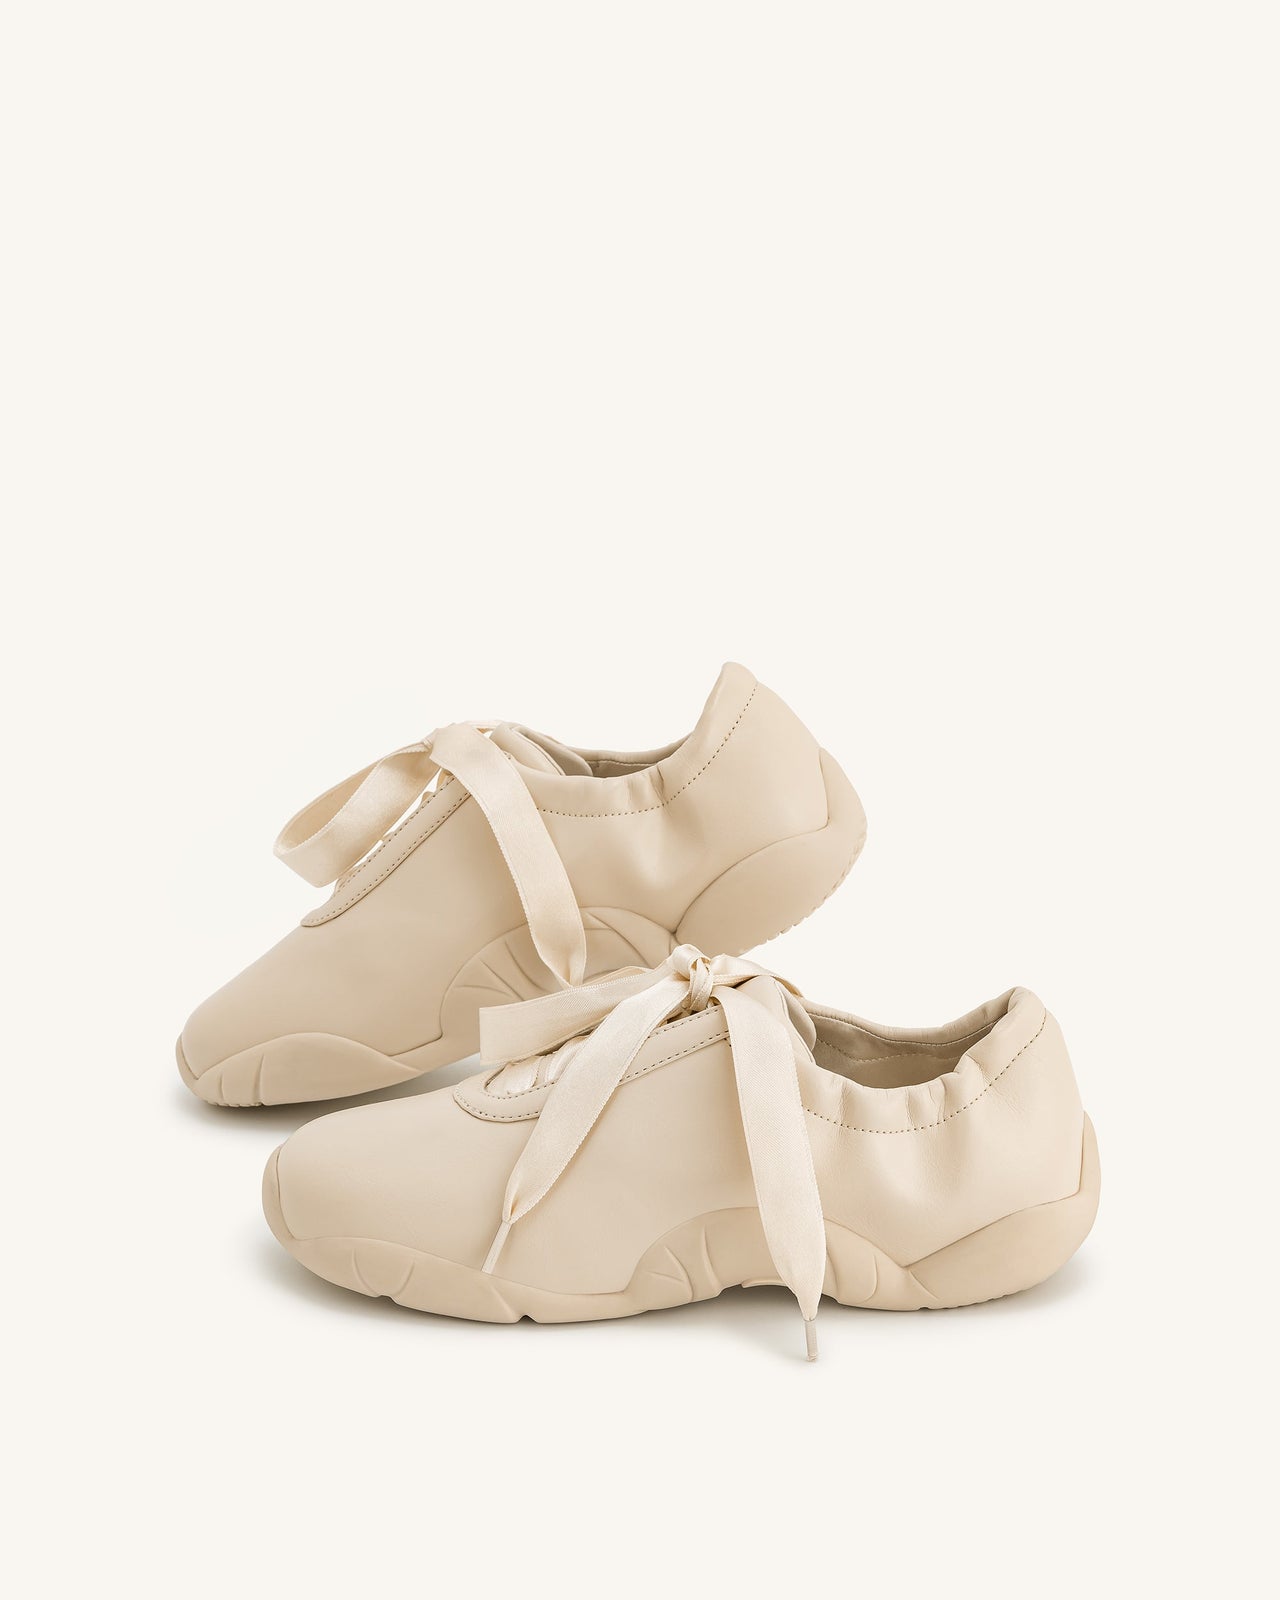 Flavia 芭蕾舞鞋 - 杏色